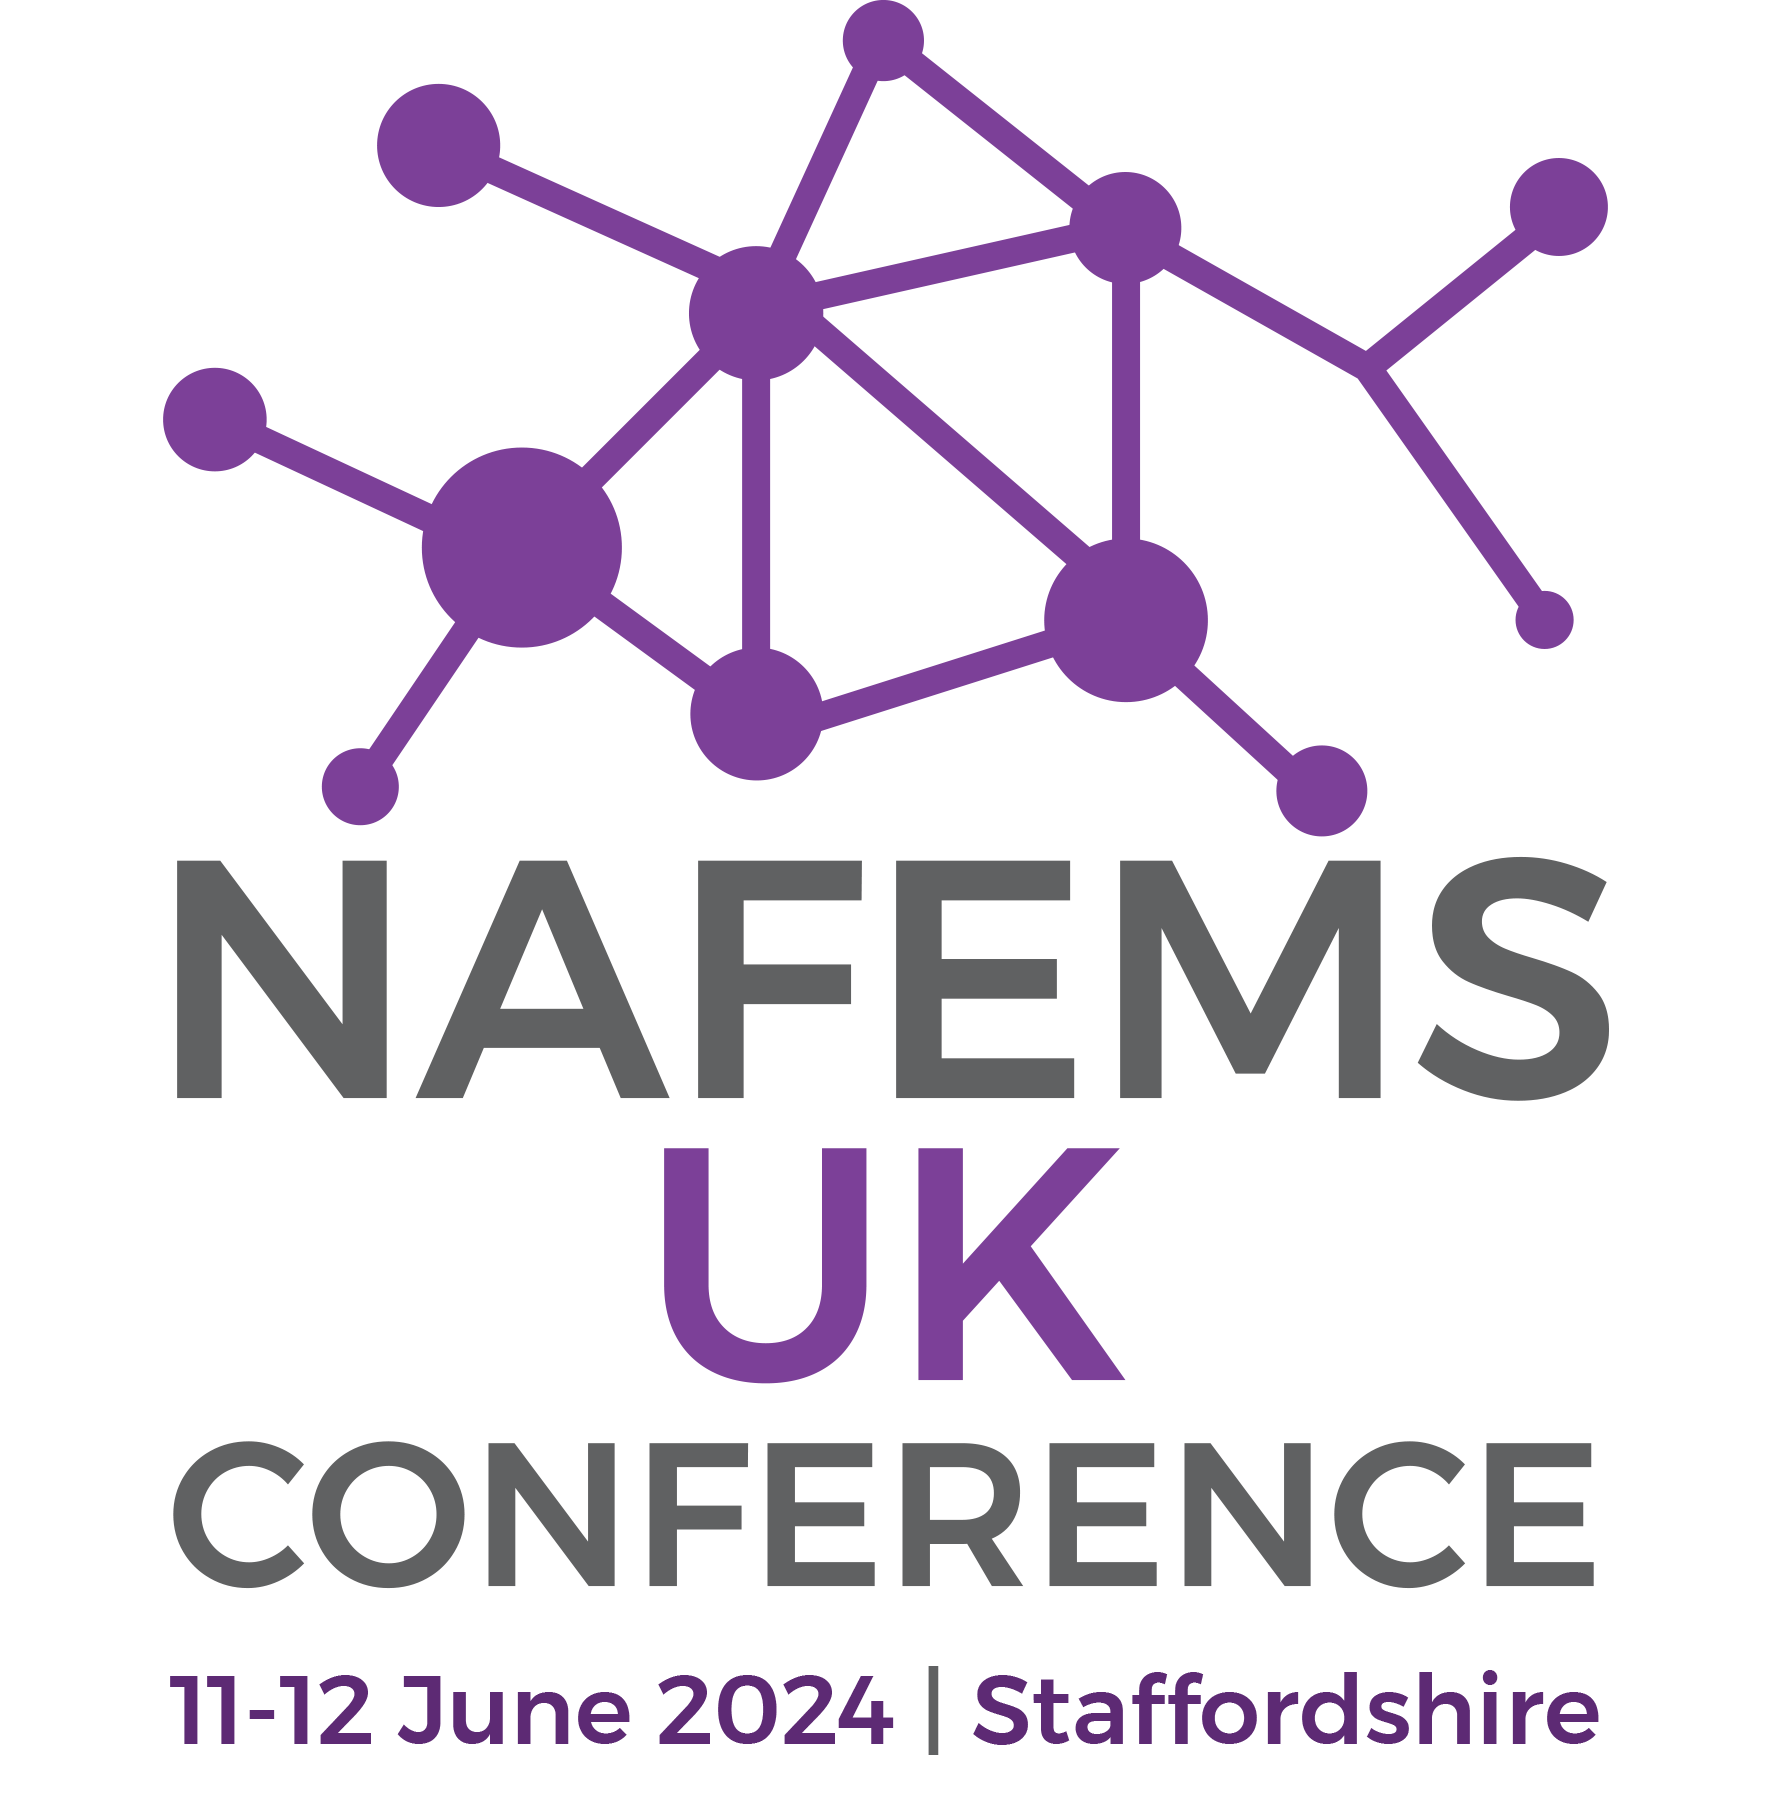 NAFEMS UK Conference